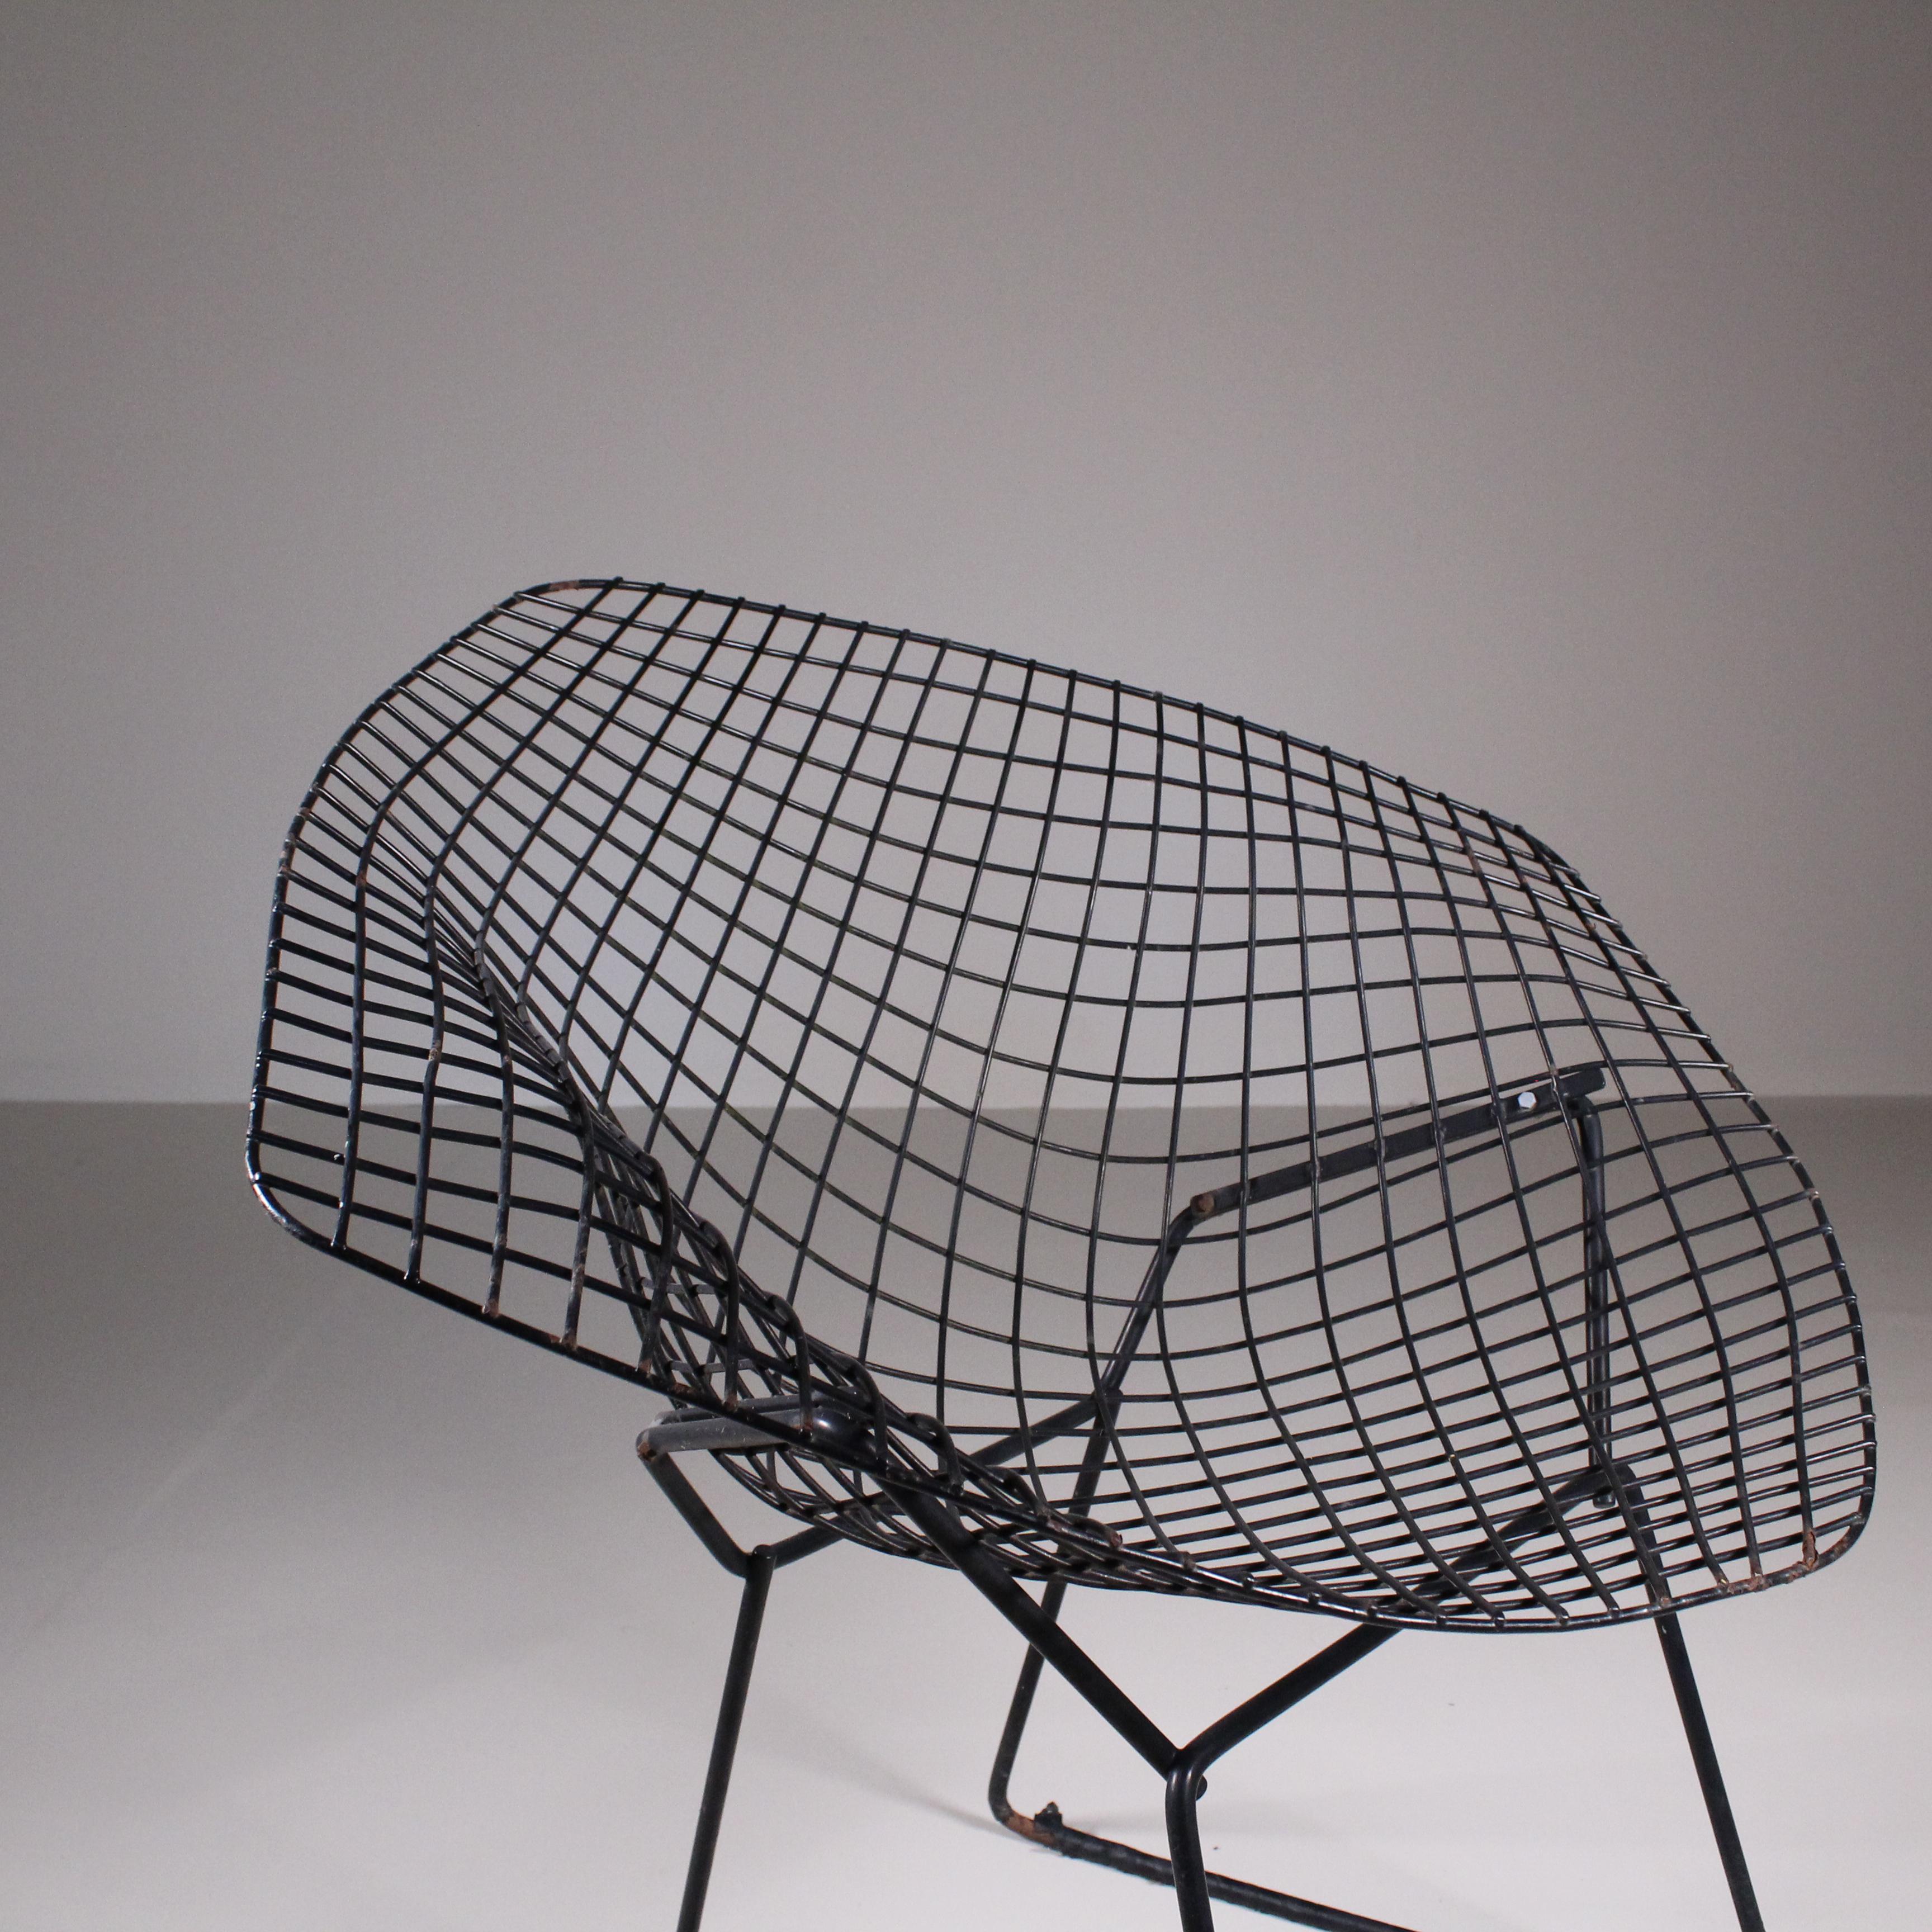 La chaise Diamond est une étude stupéfiante de l'espace, de la forme et de la fonction, réalisée par l'un des maîtres sculpteurs du siècle dernier. Comme Saarinen et Mies, Bertoia a trouvé une grâce sublime dans un matériau industriel, l'élevant